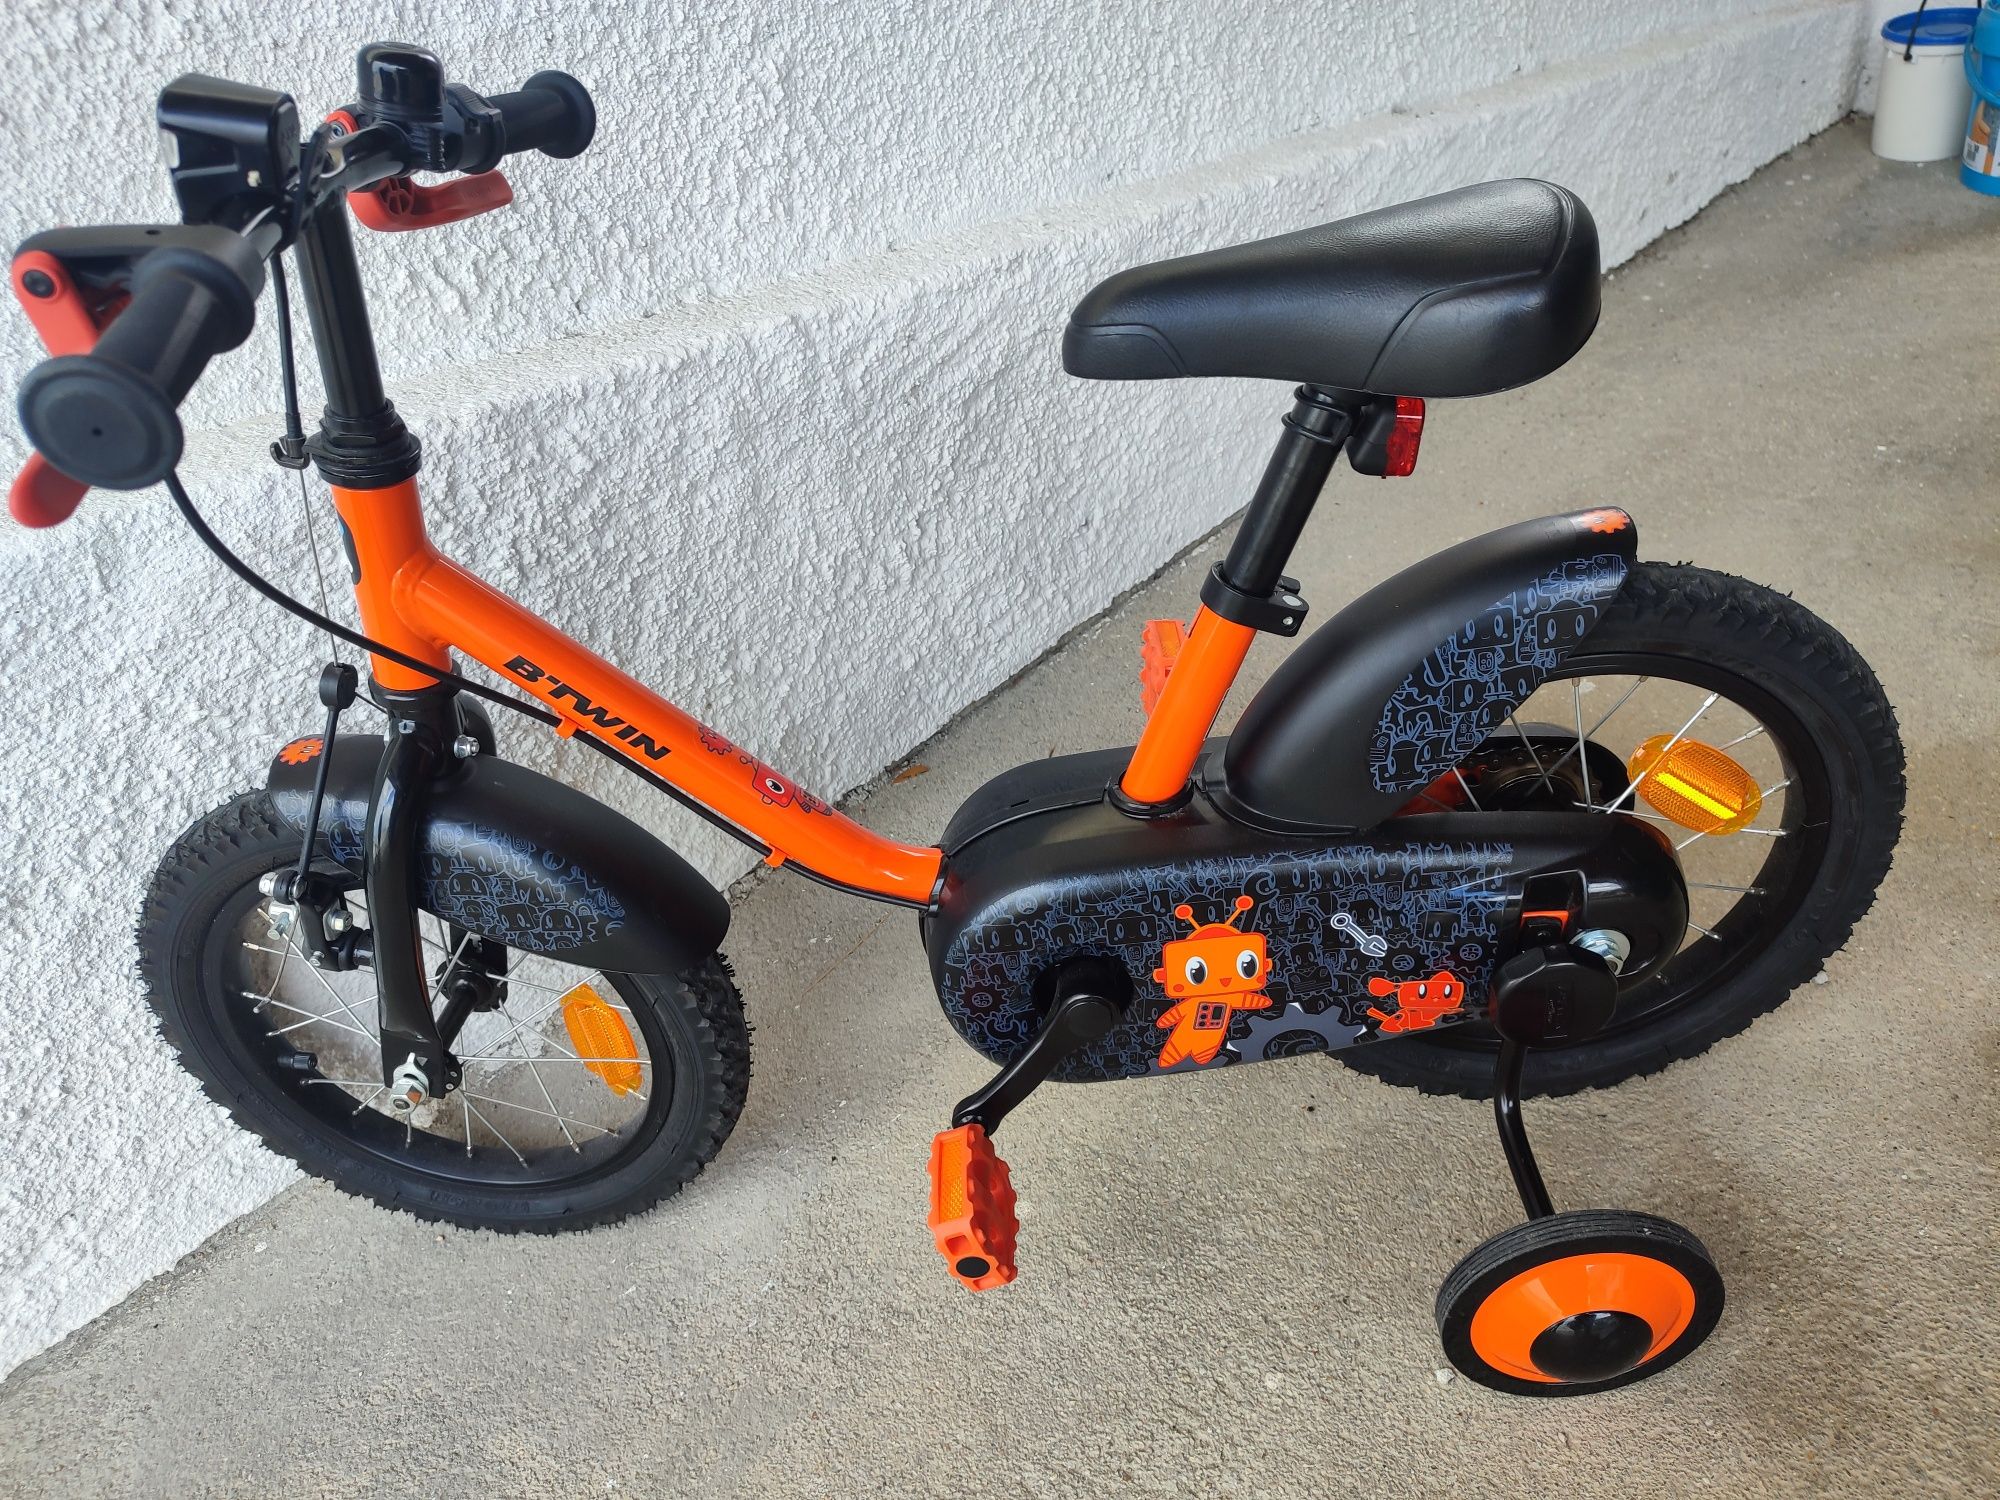 Bicicleta de criança ( BTWIN ) roda 14 Nova